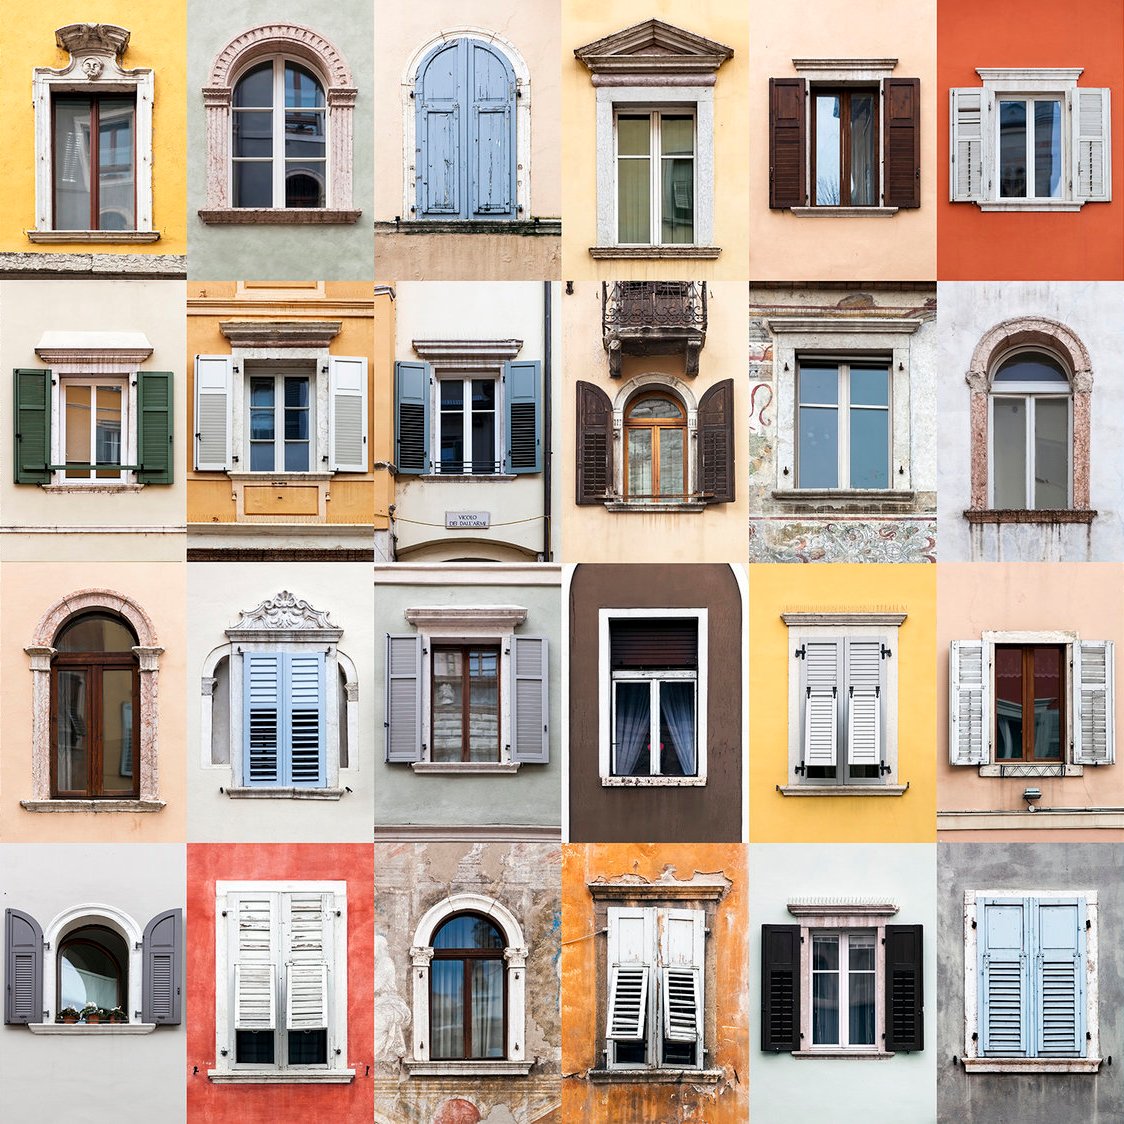 27. Windows of Trento, Italy